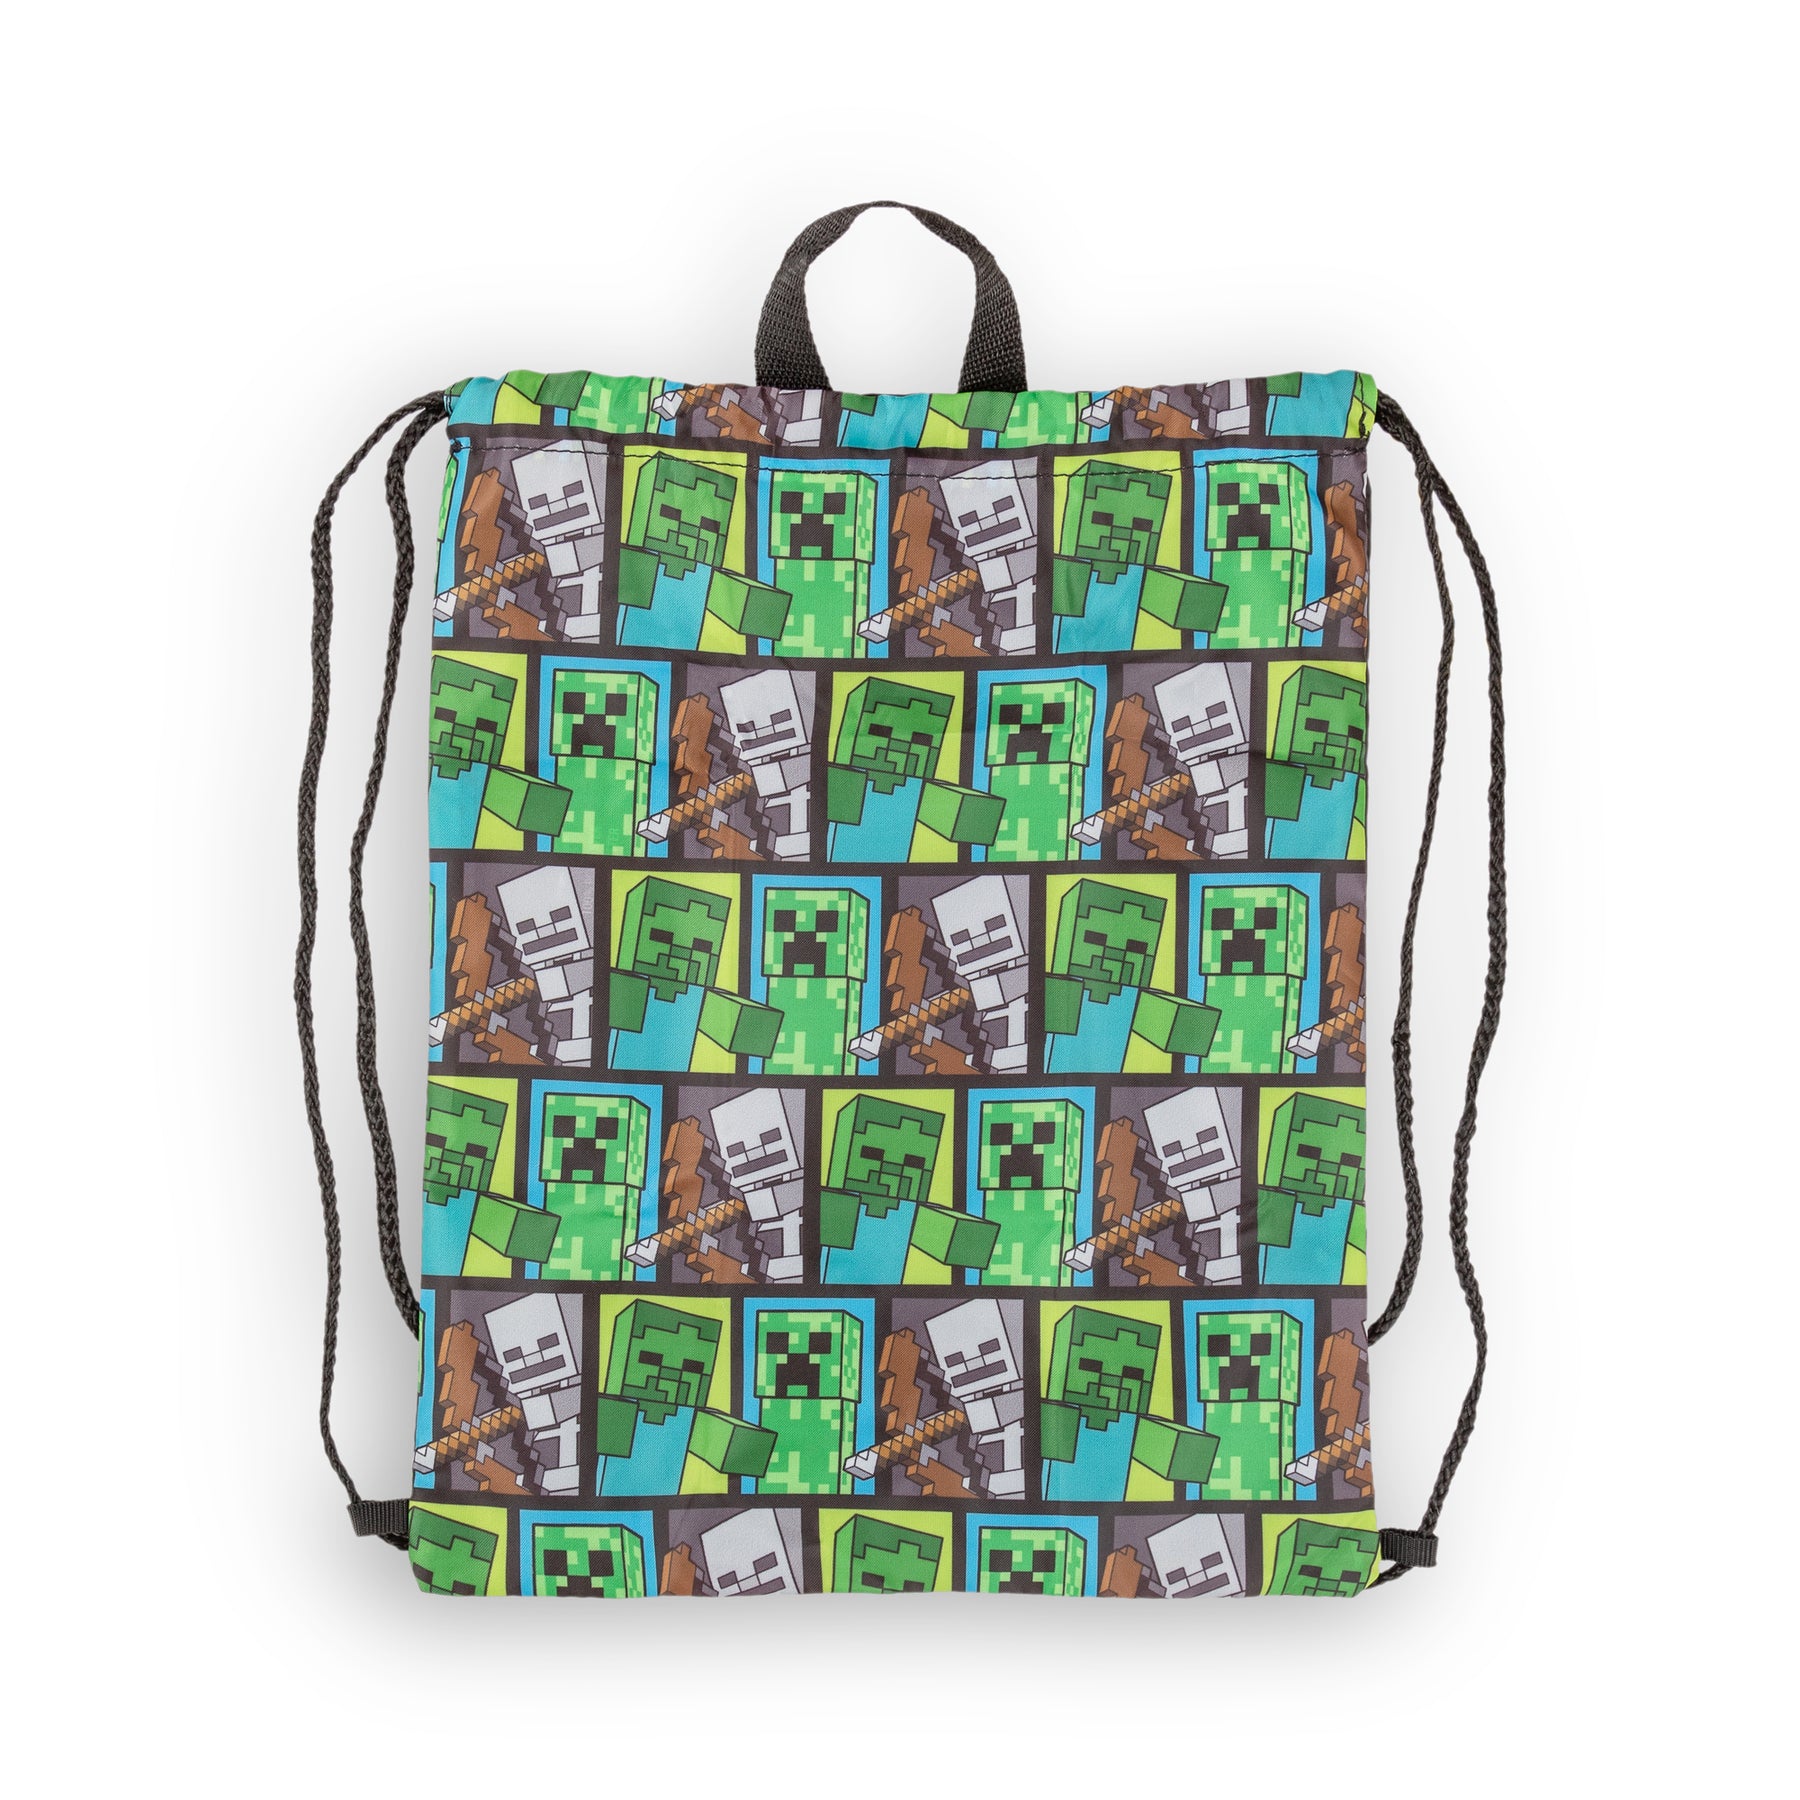 Harry Potter 5 Piece 16 Backpack & Lunch Bag Set, School Bookbag, Blue